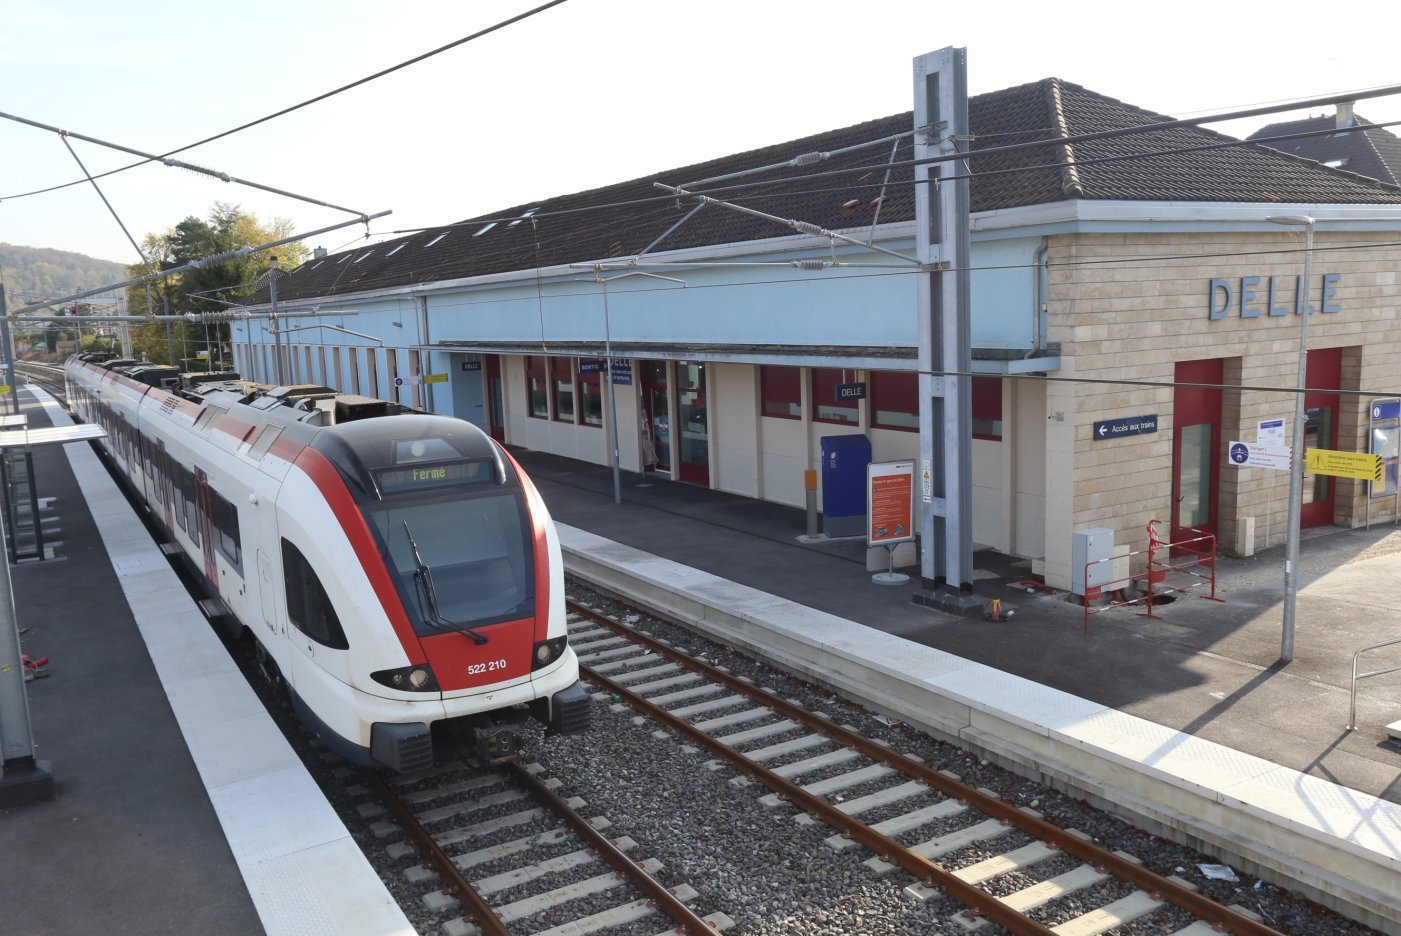 La ligne Delle-Belfort  rouvrira le 9 décembre  prochain et permettra  plusieurs liaisons entre  la Suisse et la gare TGV  de Belfort-Montbéliard.